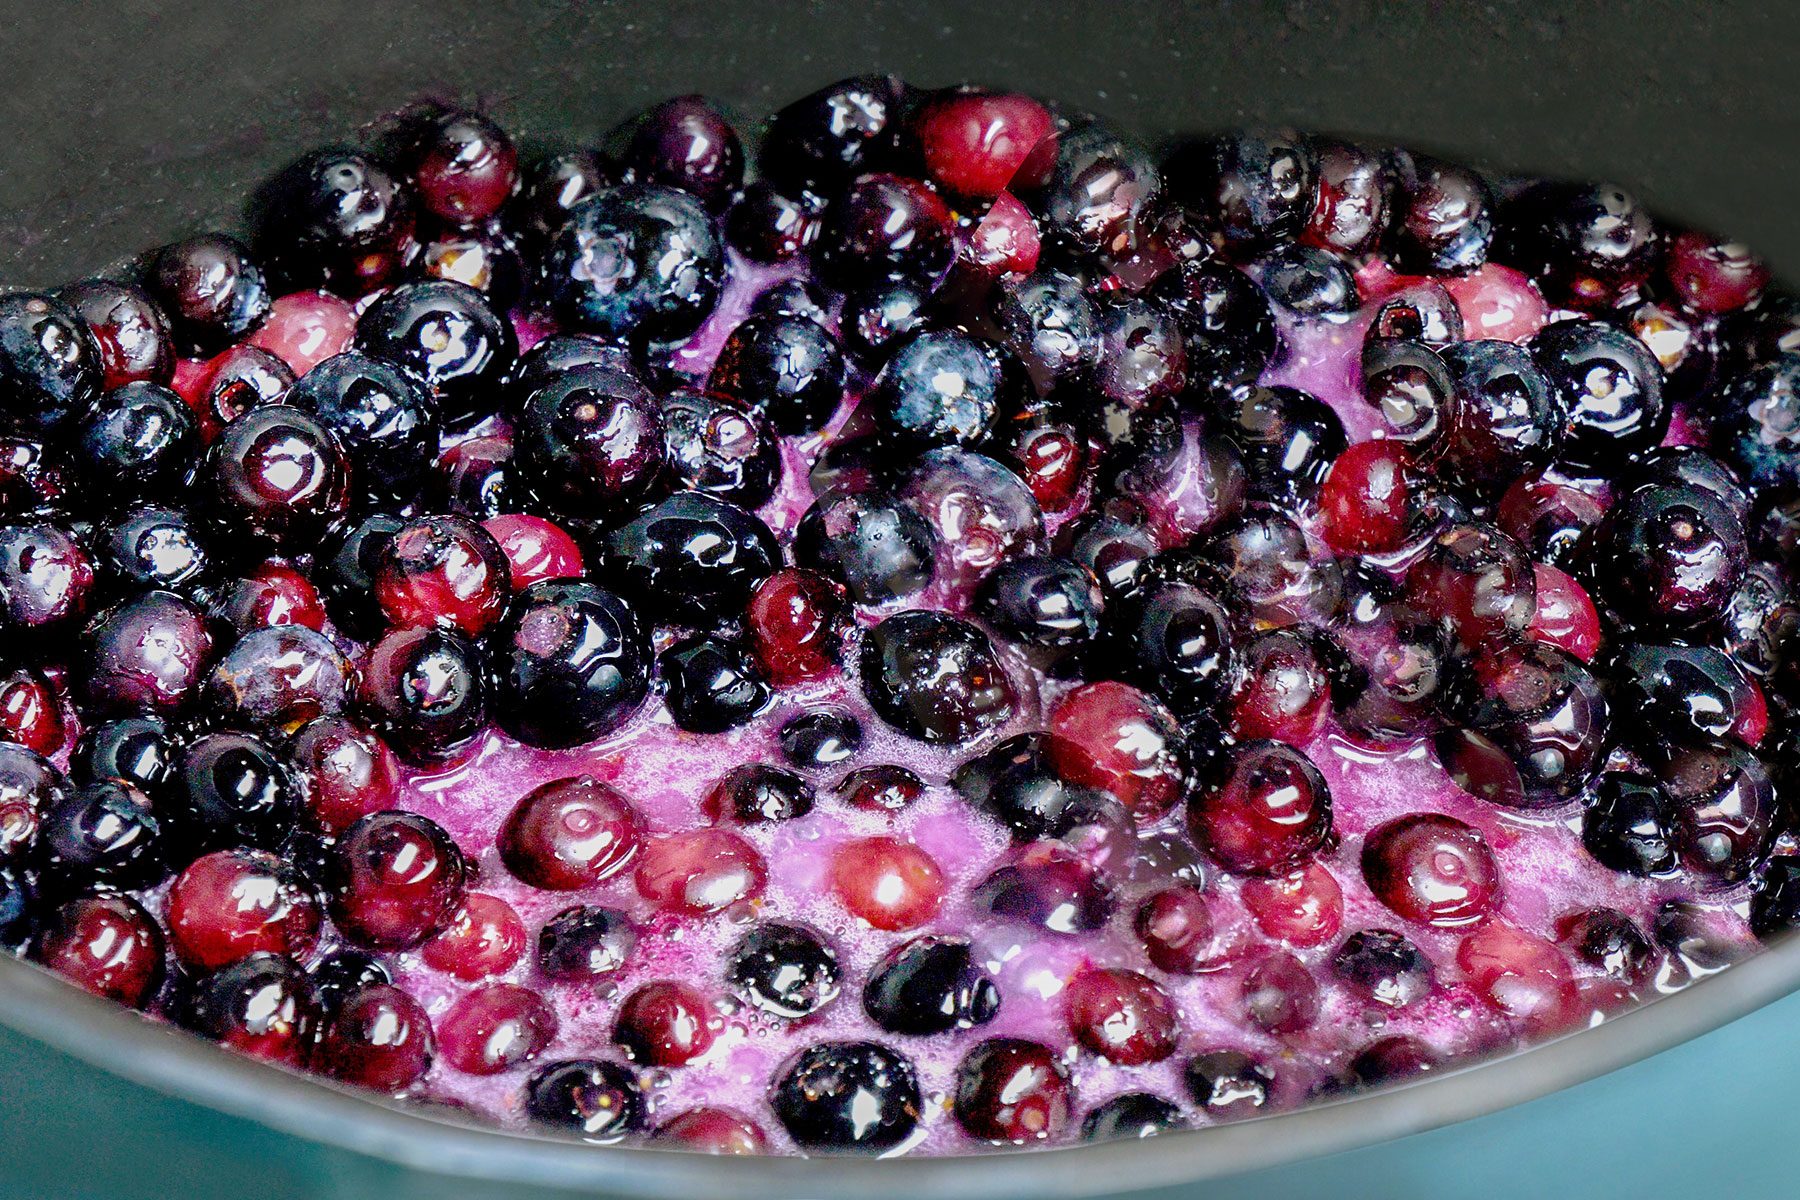 Blueberries cooking in pan